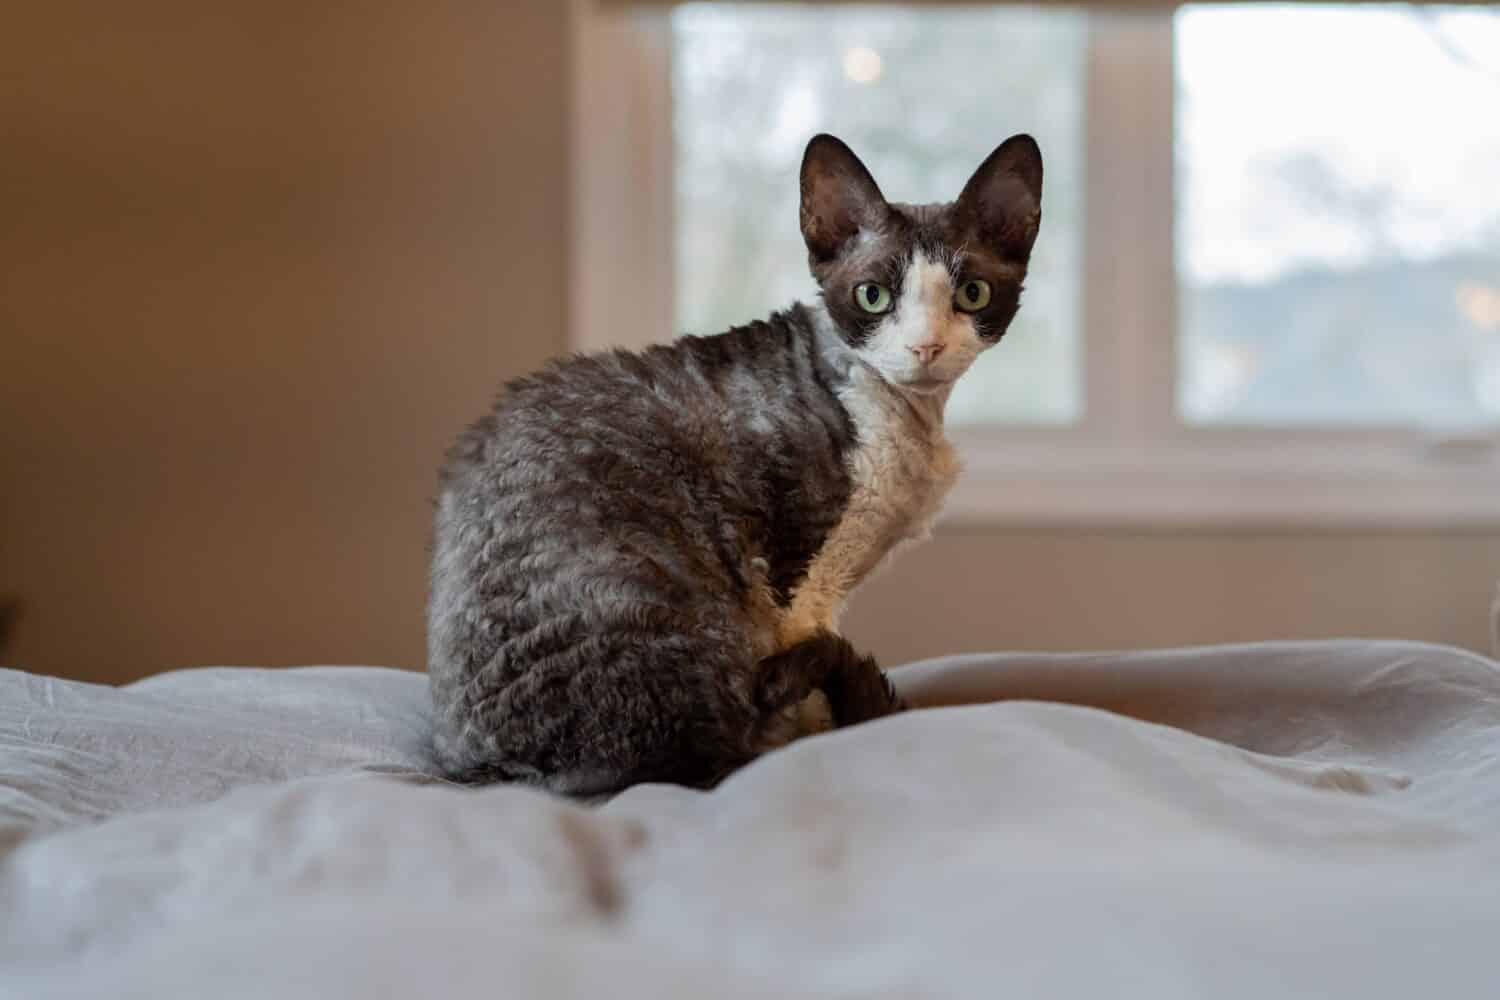 Un gatto Devon Rex si siede sul letto e guarda la telecamera da sopra la spalla.  Mostra il caratteristico mantello ondulato, le grandi orecchie e gli occhi di un gatto Devon Rex proveniente dall'Inghilterra.